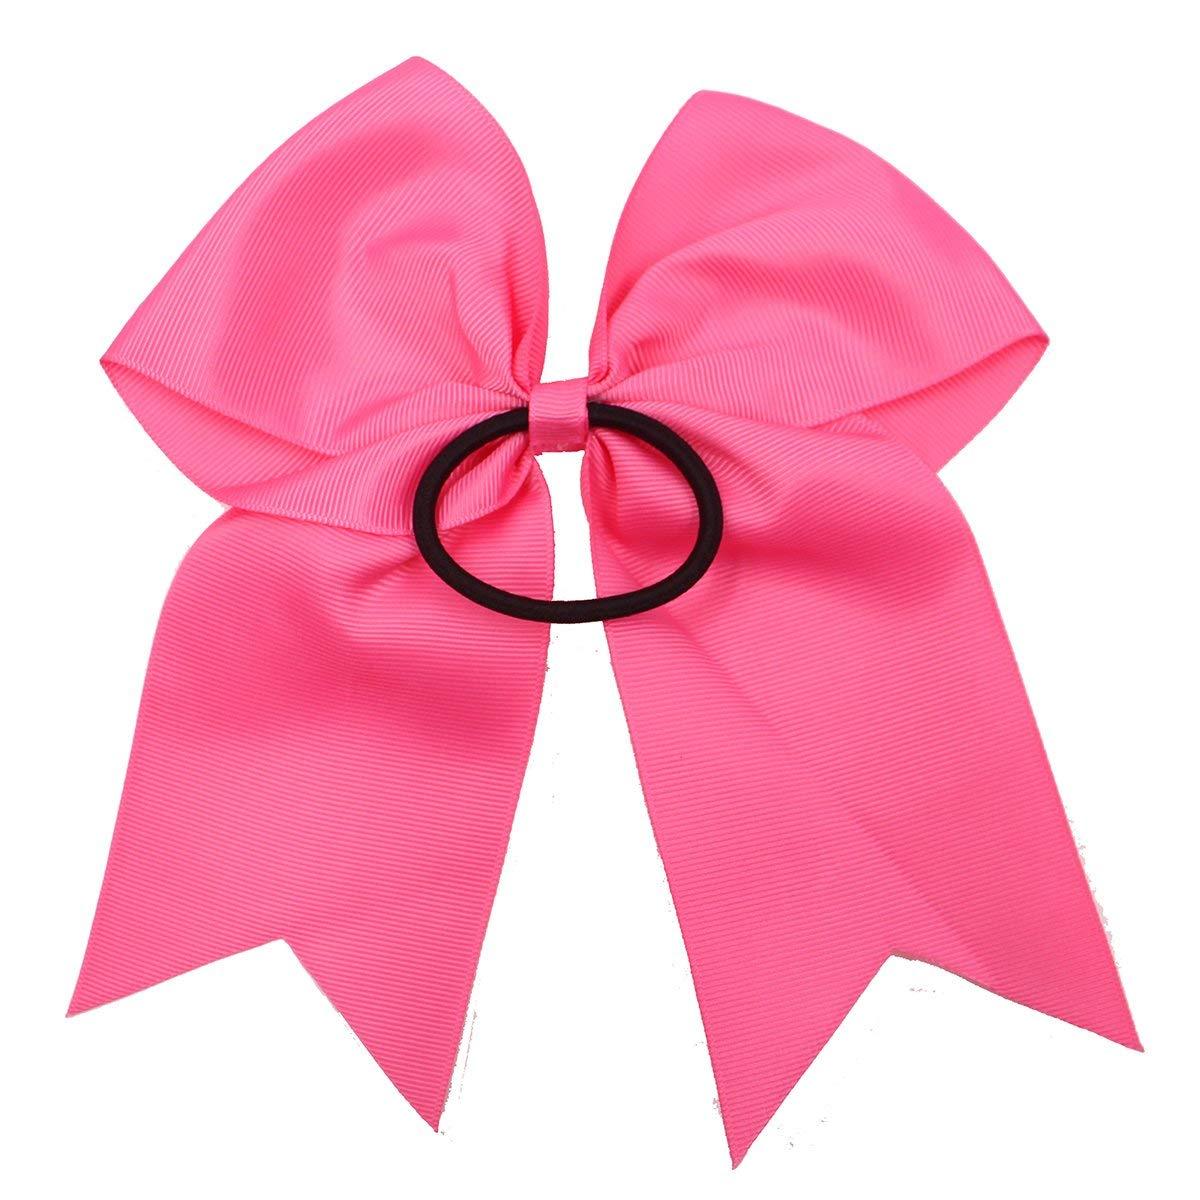 JOYOYO 20Pcs 8 Large Cheer Bows for Girls Ponytail Holder